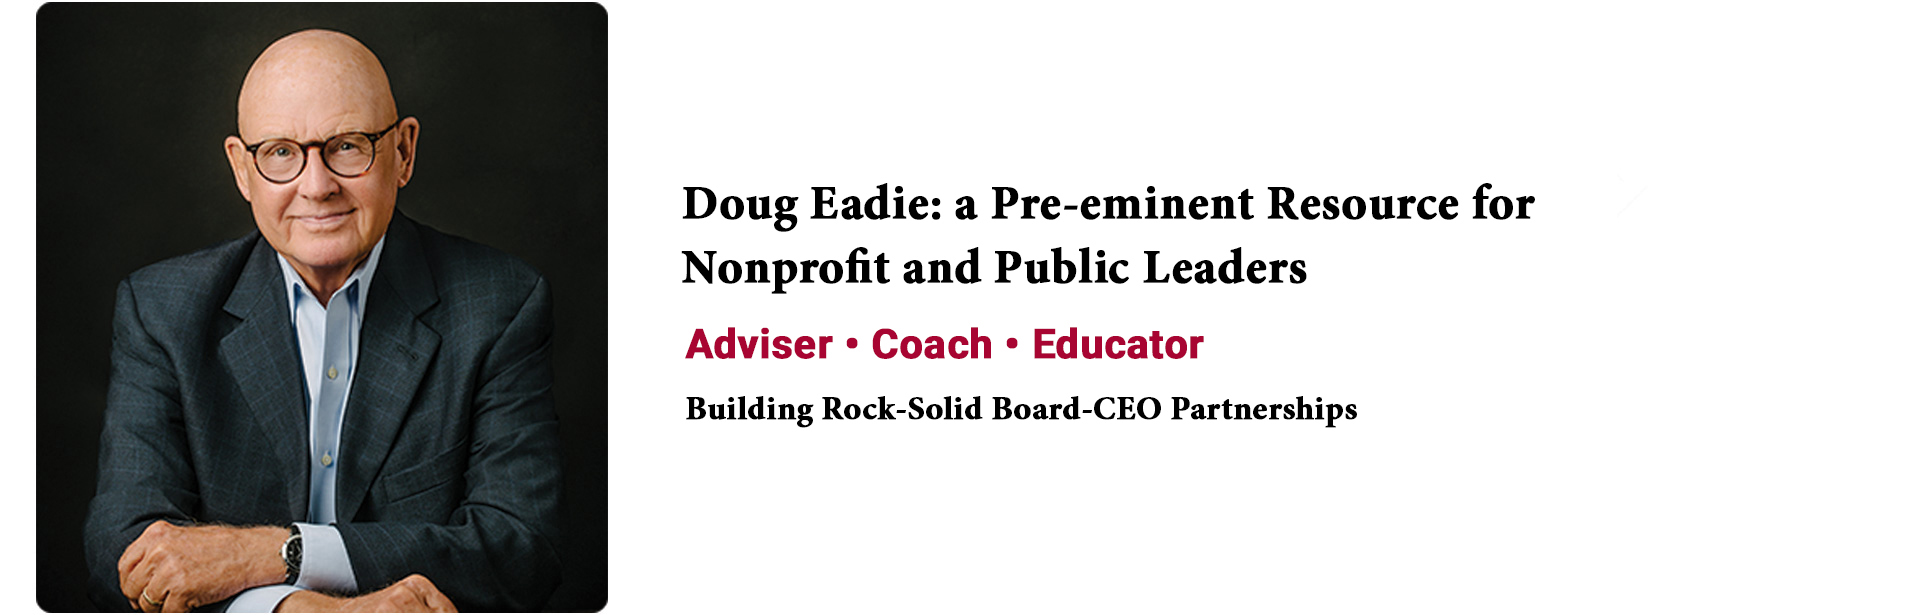 Doug Eadie - Building Board-CEO Partnerships